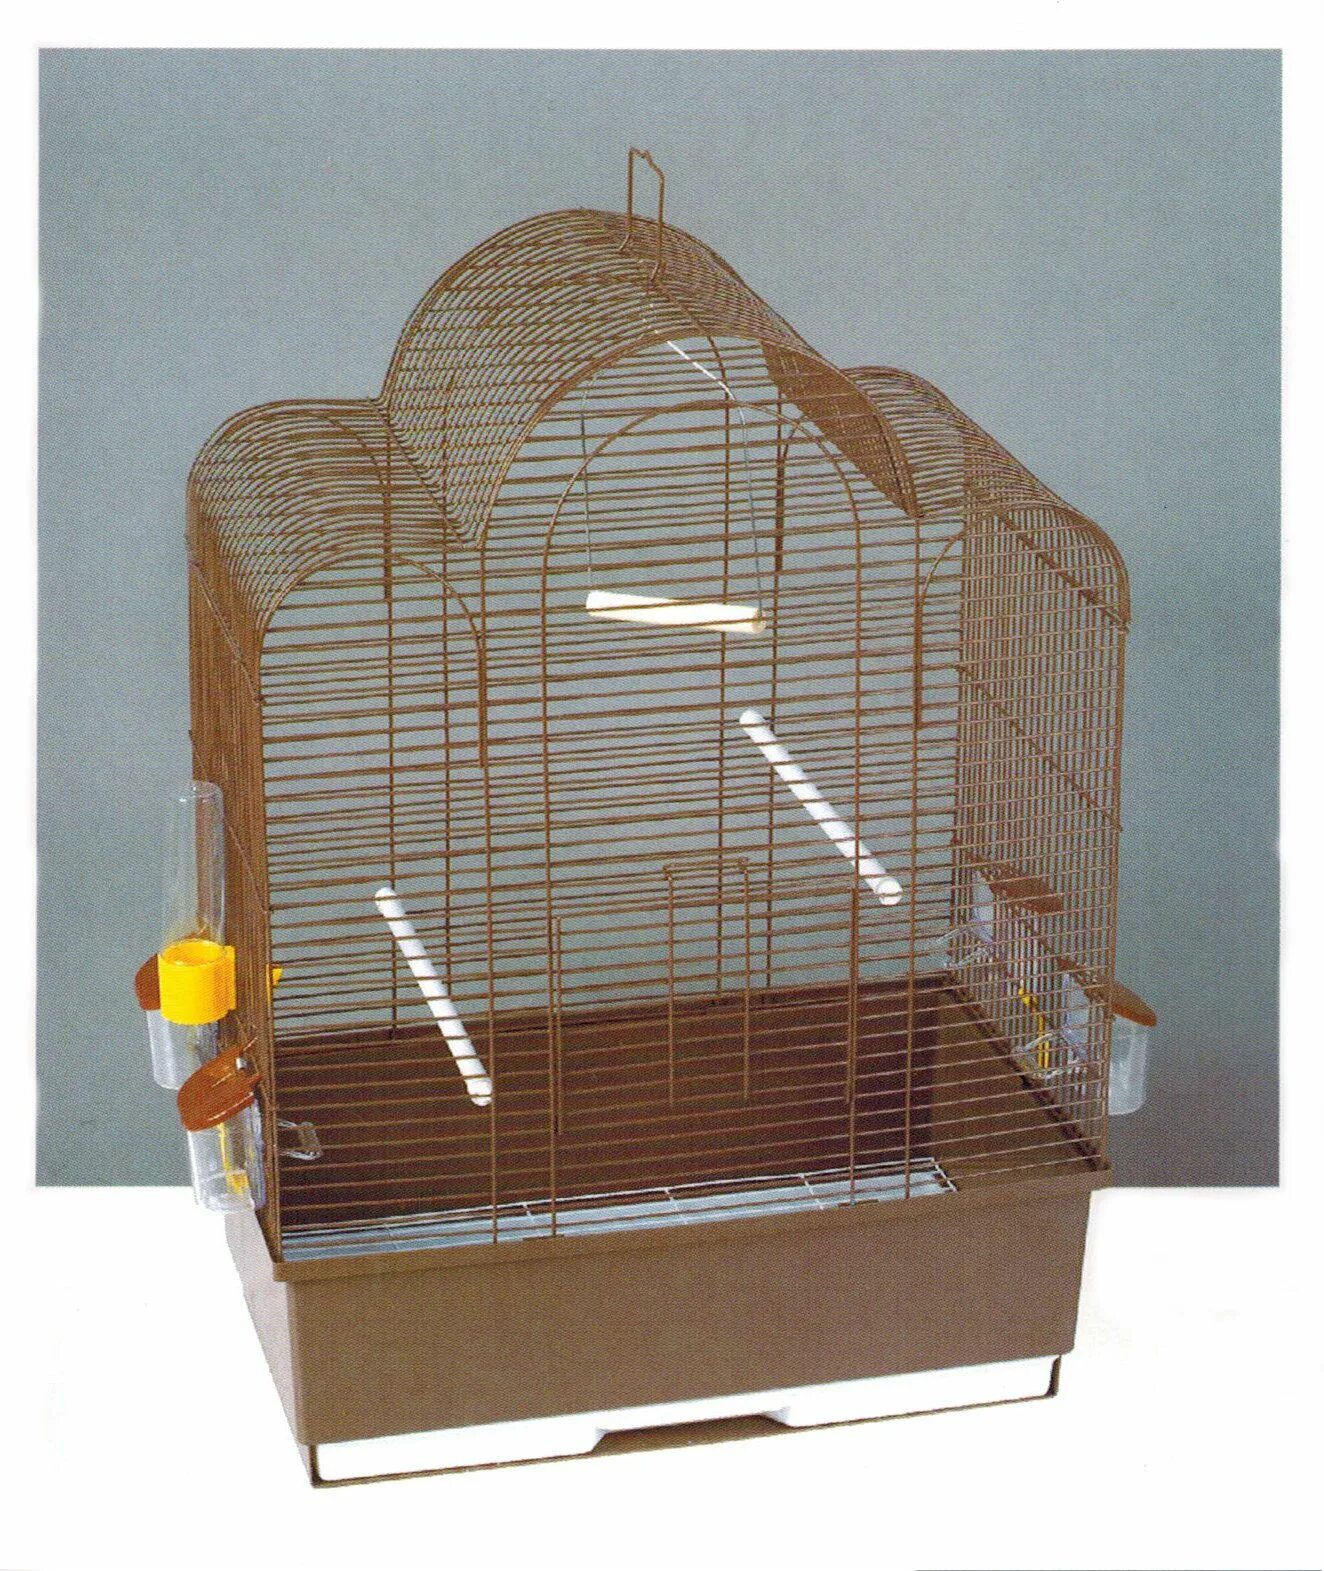 Клетка для птиц Tesoro в3121 37 х 28 х 48 см. Petmax клетка для птиц 61,2x45,2x82см. Tesoro e44 клетка. Клетка Тесоро для птиц.